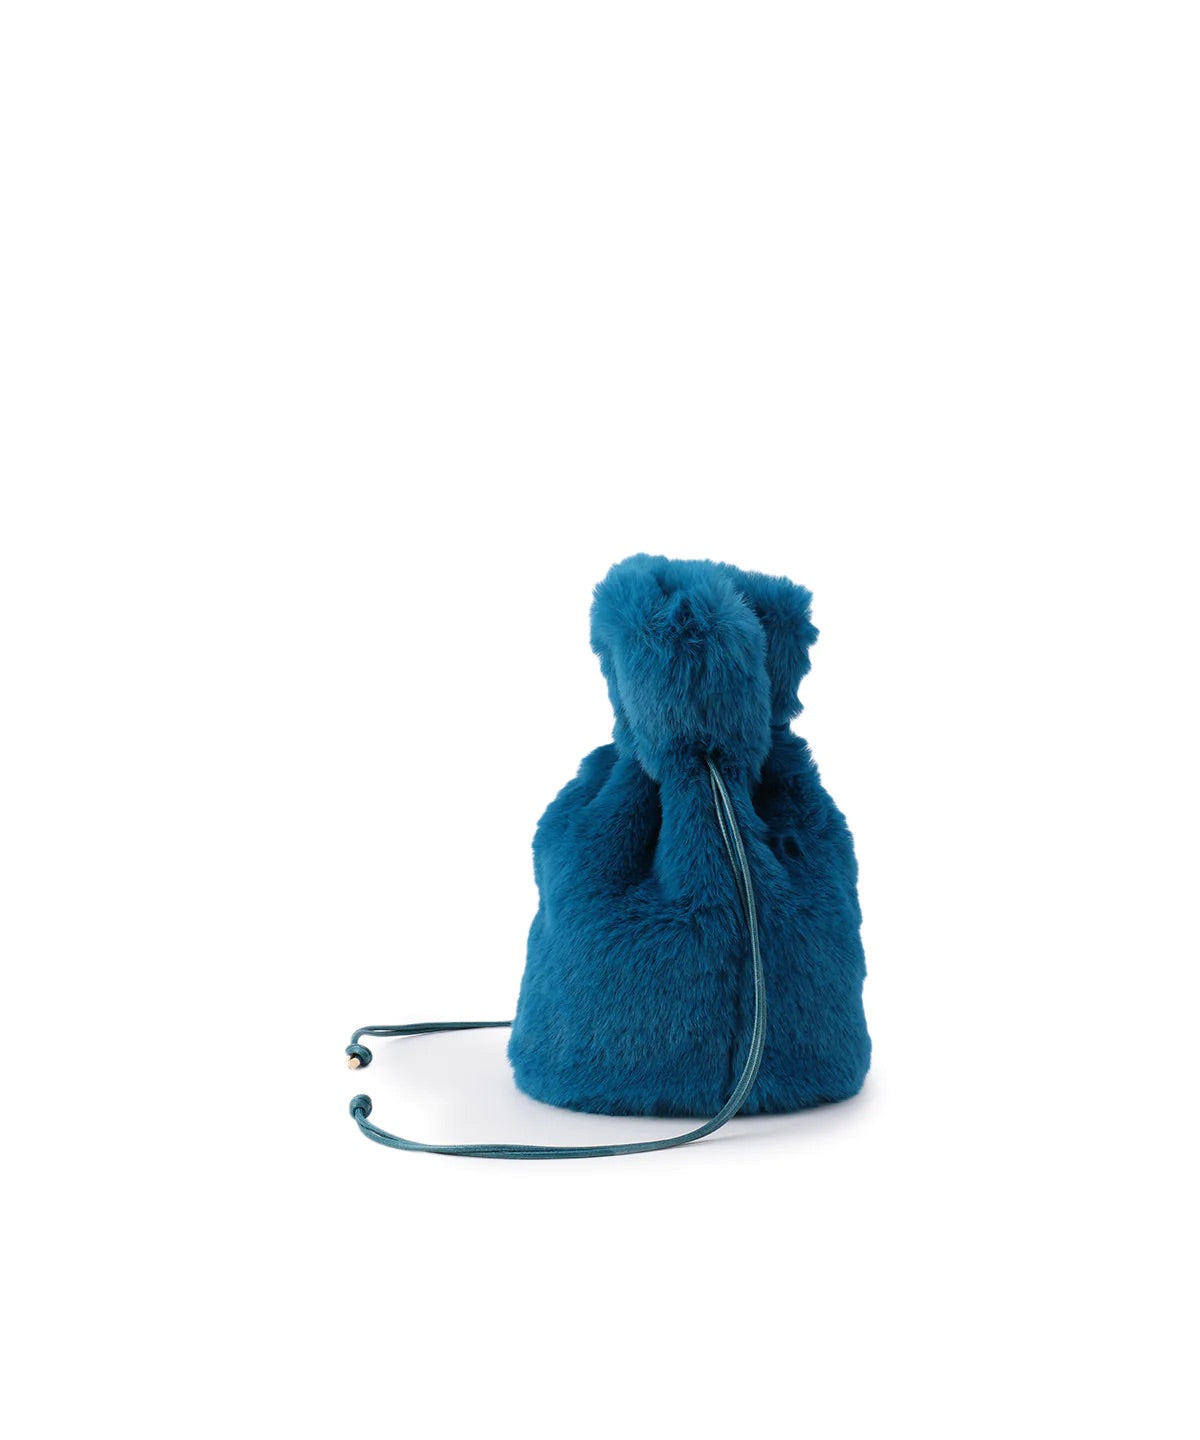 【期間限定ポーチS付き】Eco Fur Drawstring Bag (Small) E.BLUE